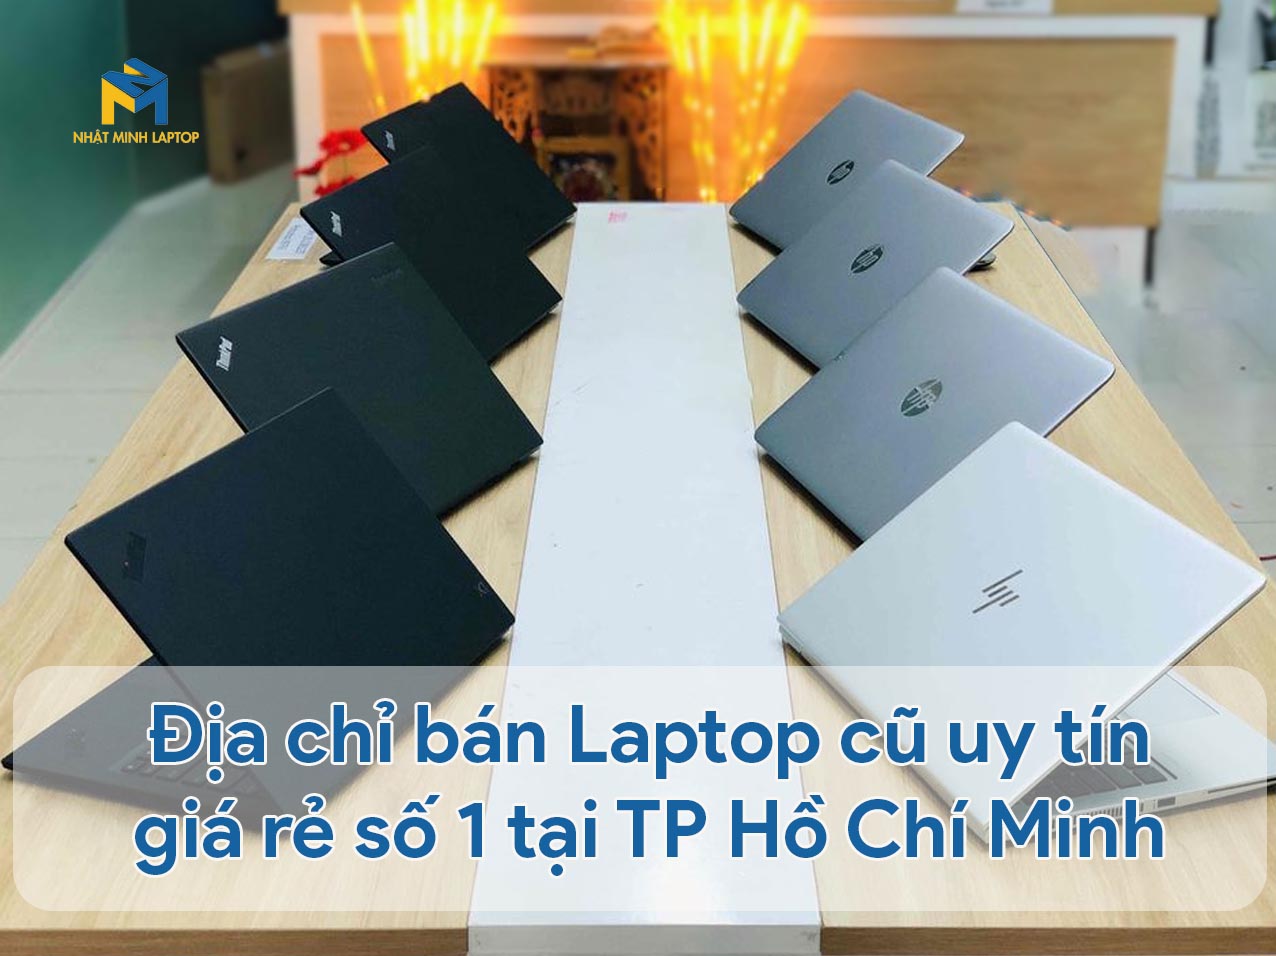 Địa chỉ bán Laptop cũ uy tín giá rẻ số 1 tại TP Hồ Chí Minh